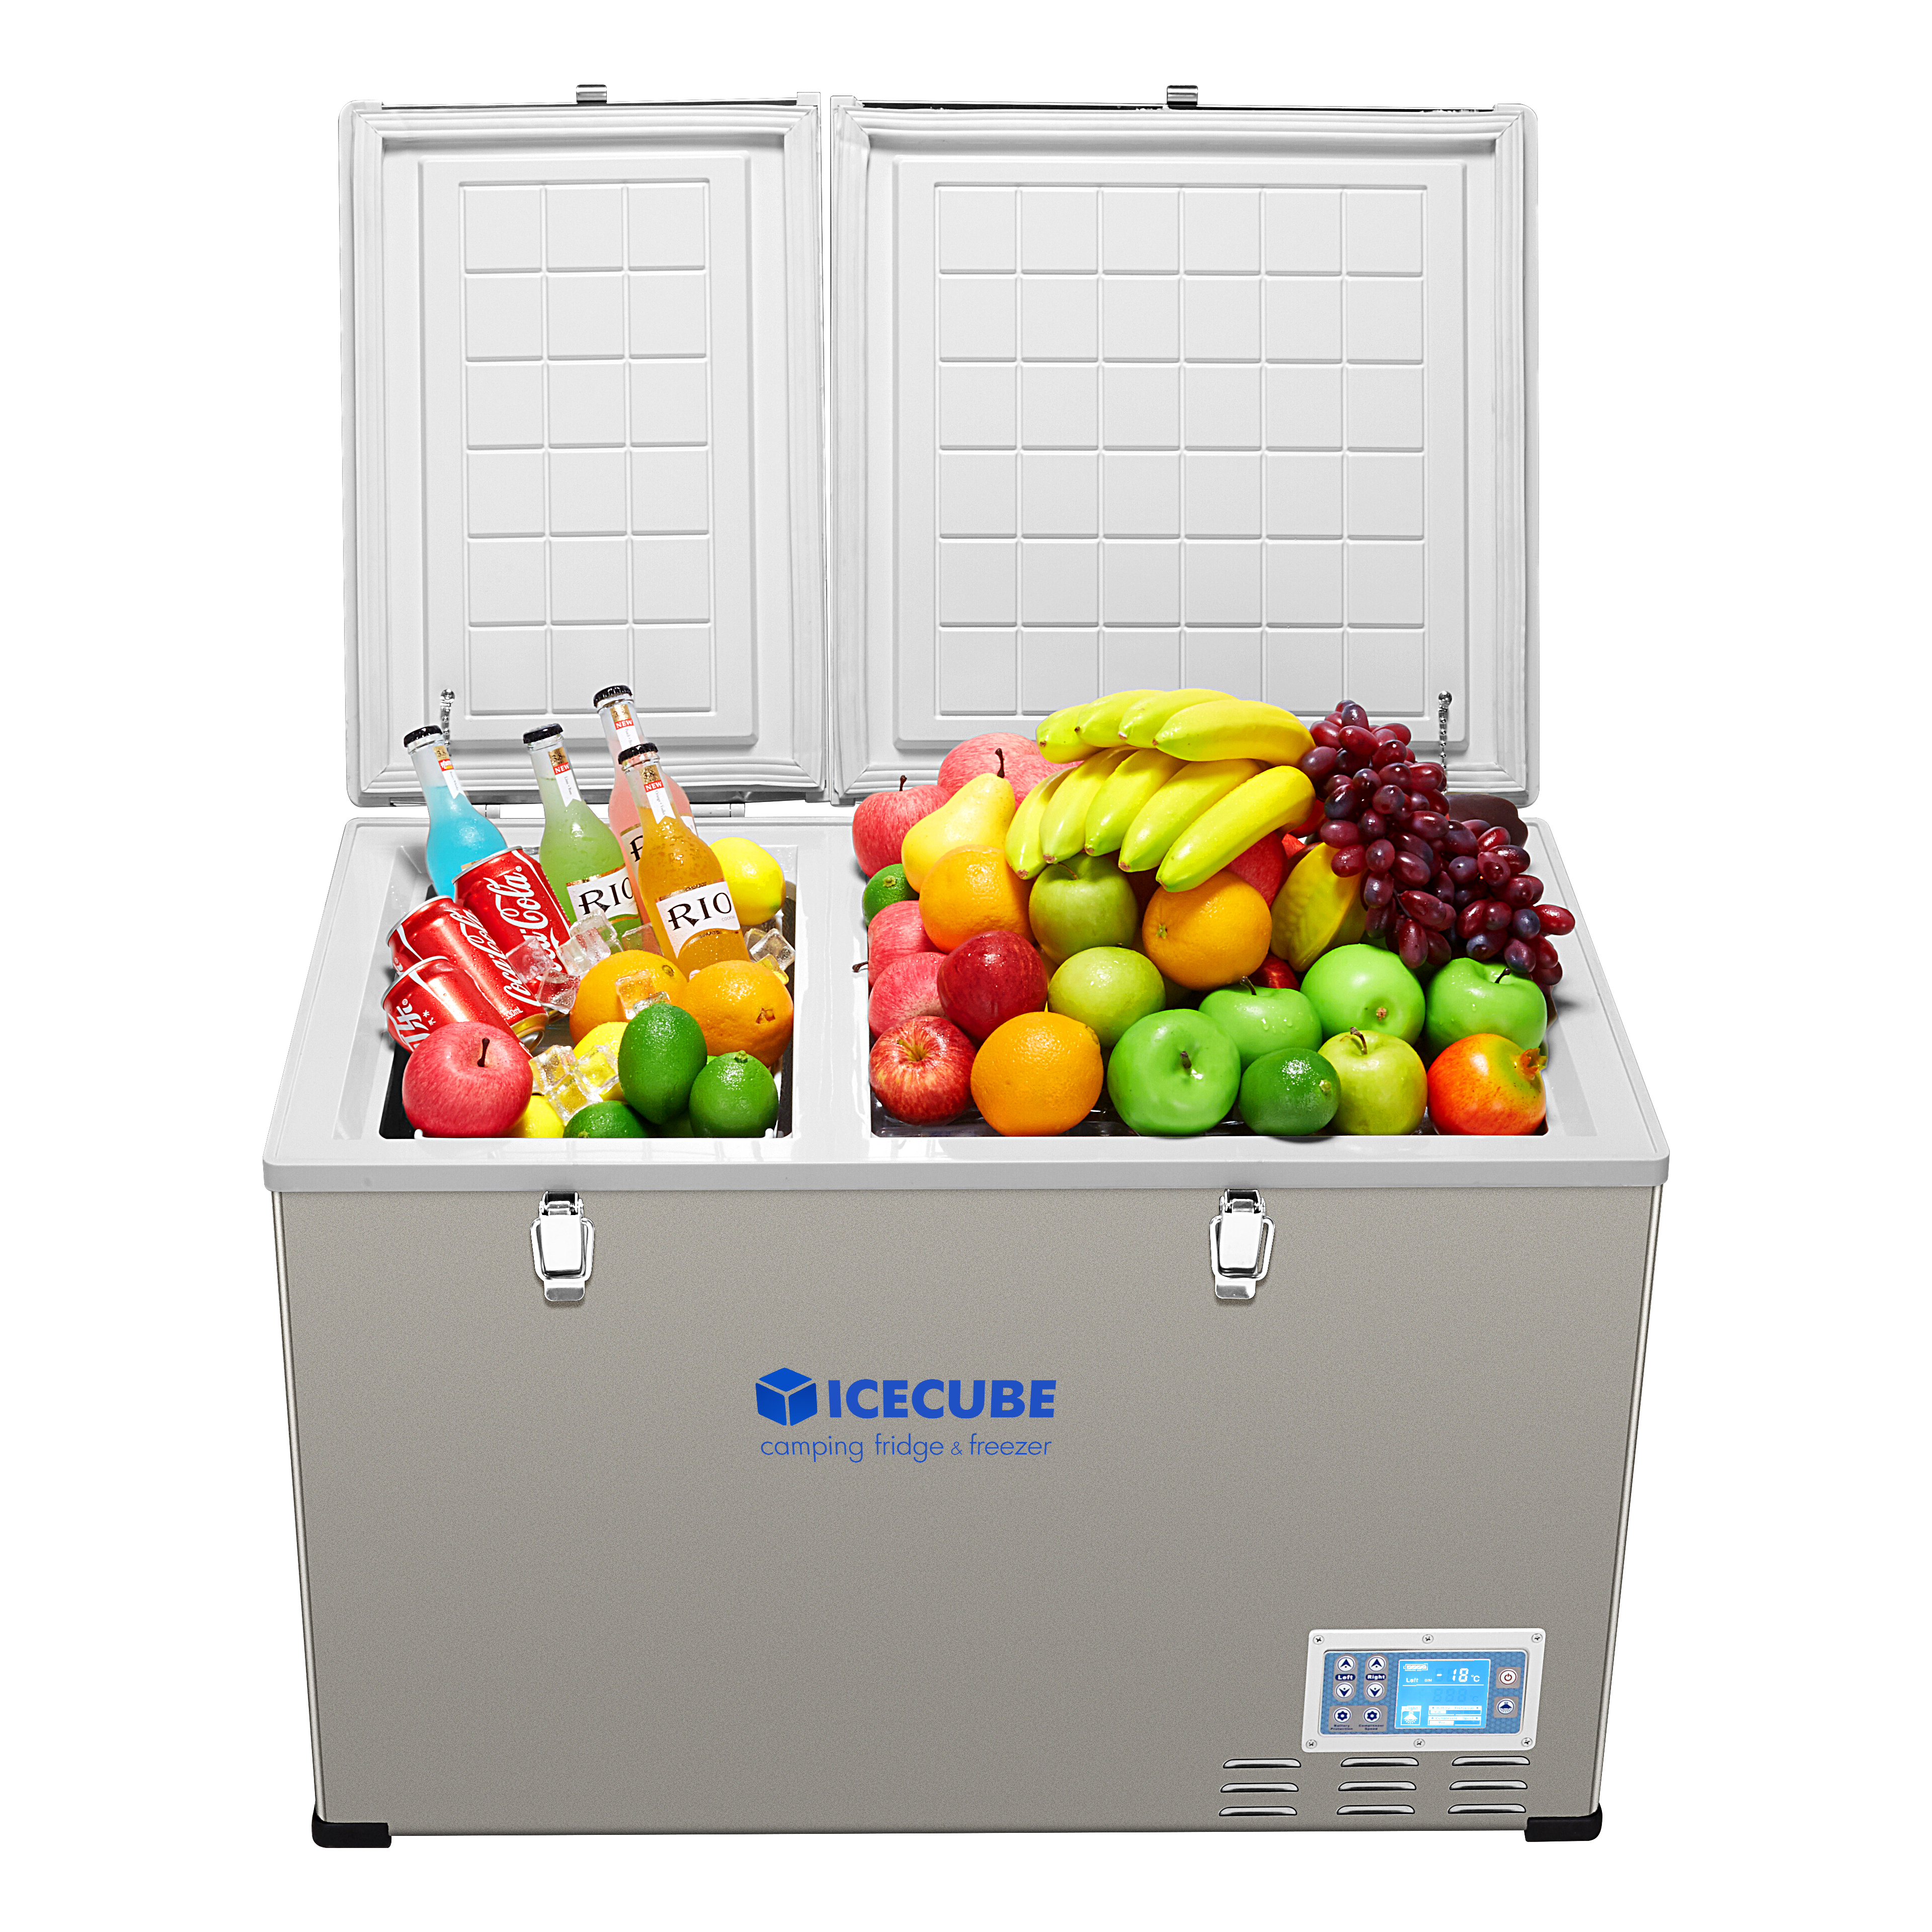 Ic cube. Автохолодильник Ice Cube ic35. Icecube холодильник автомобильный 120 литров. Холодильник компрессорный на 12/220в. Переносной морозильник.